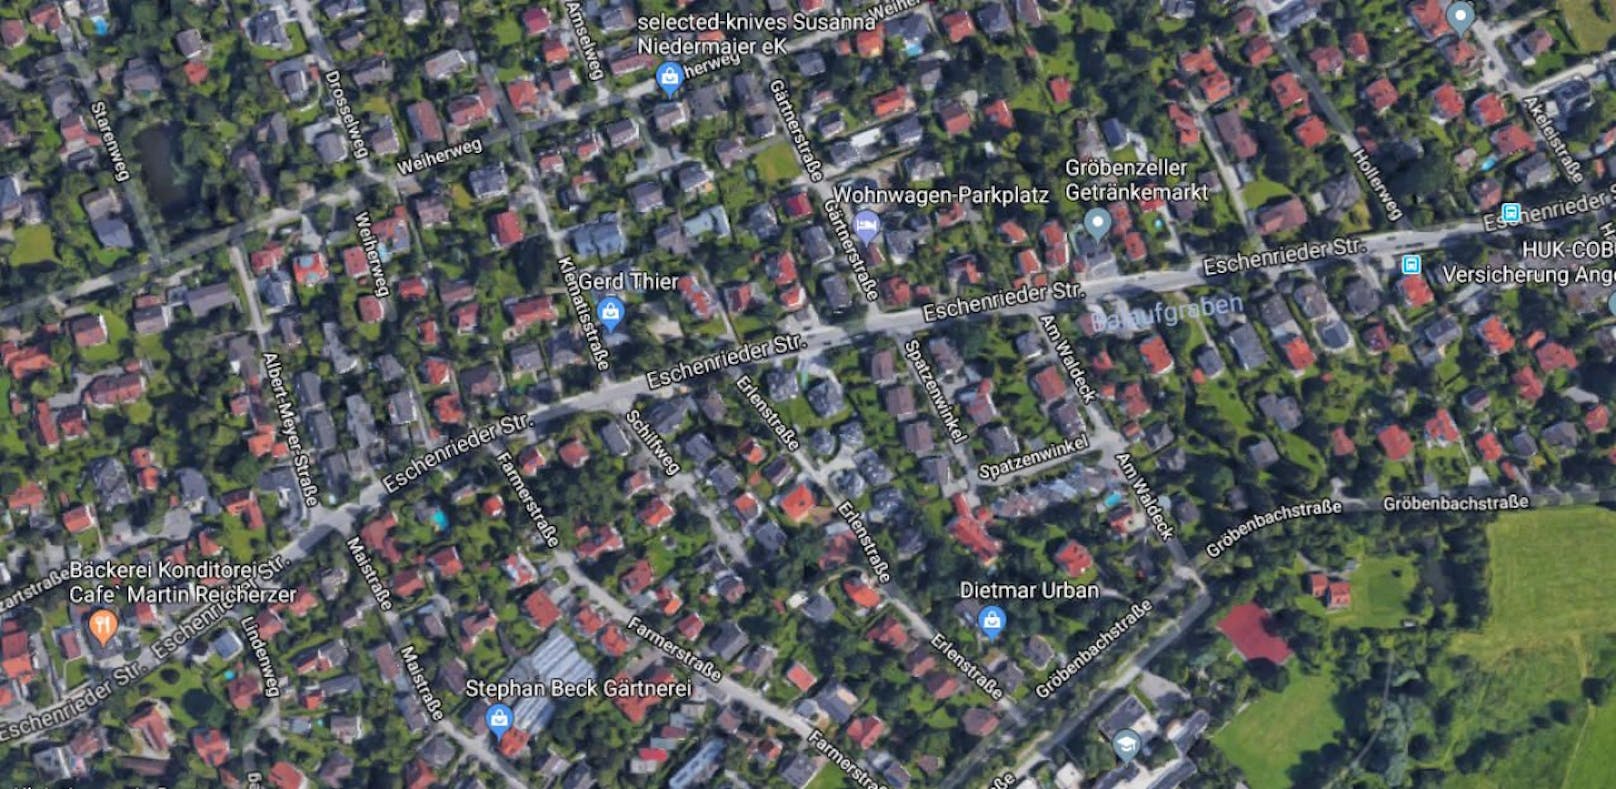 Die Leiche wurde in einem Wohnhaus in Gröbenzell in der Eschenrieder Straße entdeckt